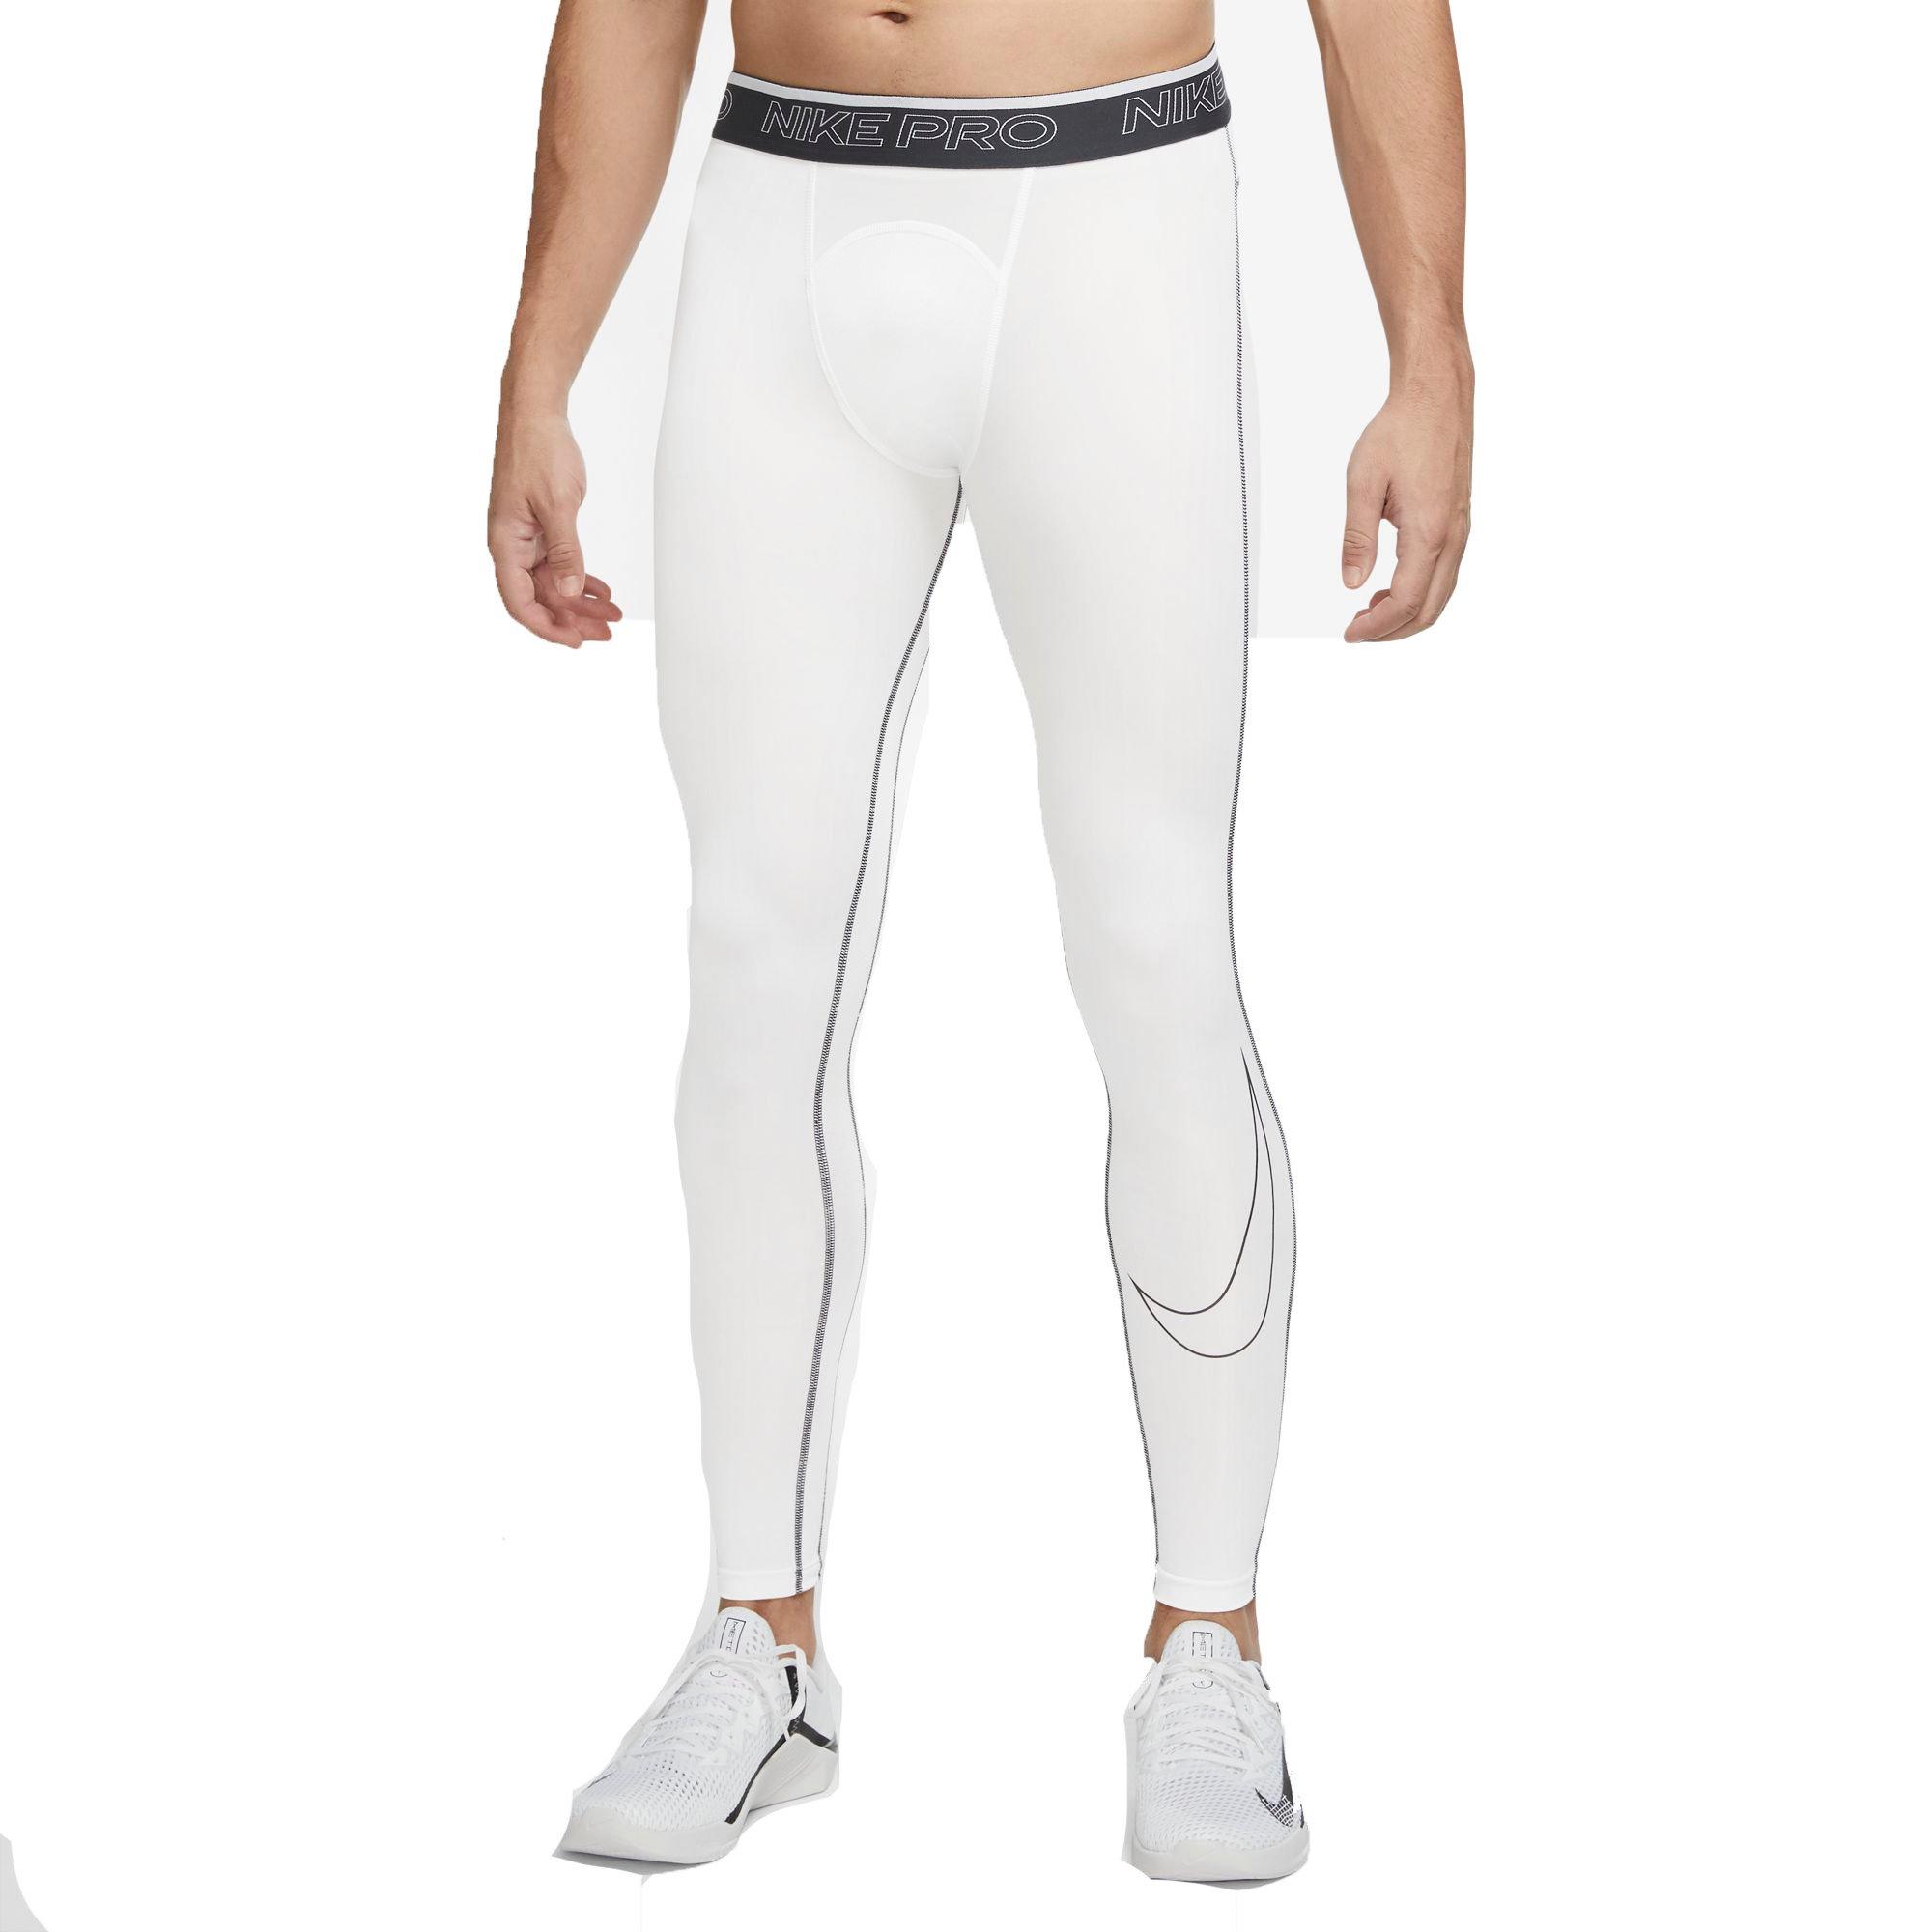 infinito buscar Regulación Nike Men's Pro Dri-FIT Compression "White" Leggings